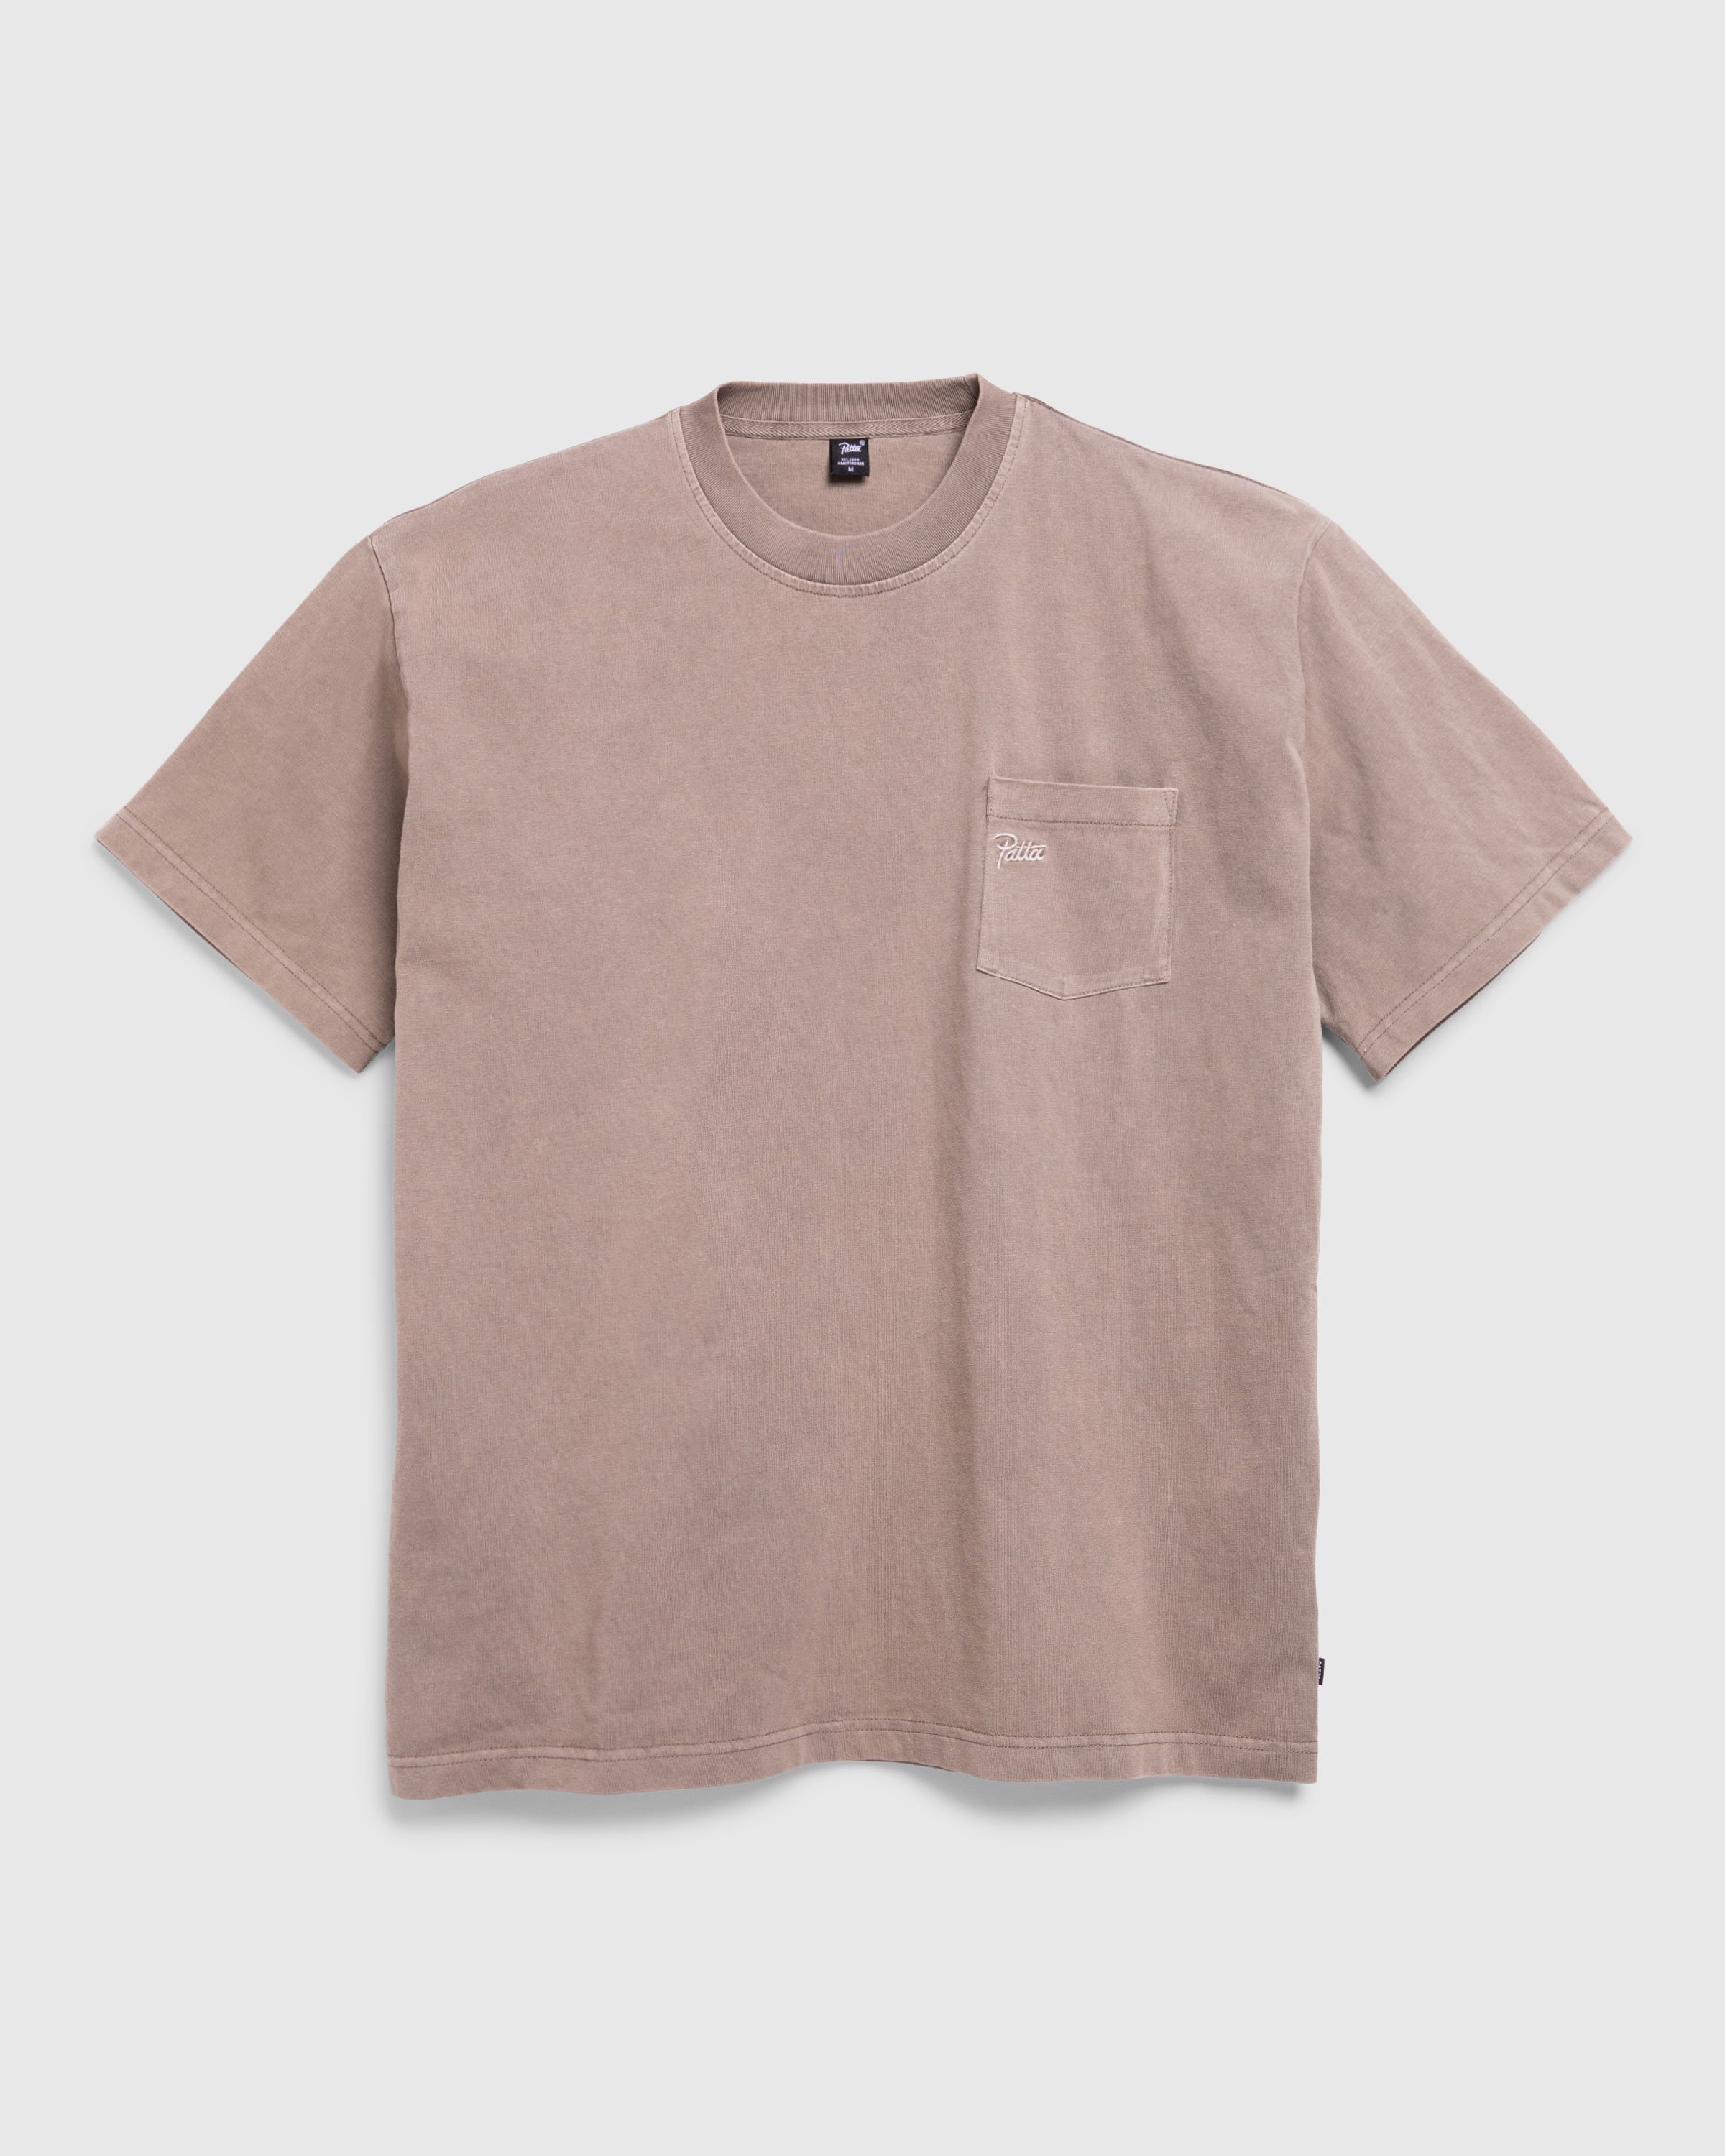 Patta - Basic Pocket T-Shirt Driftwood - Clothing - Grey - Image 1